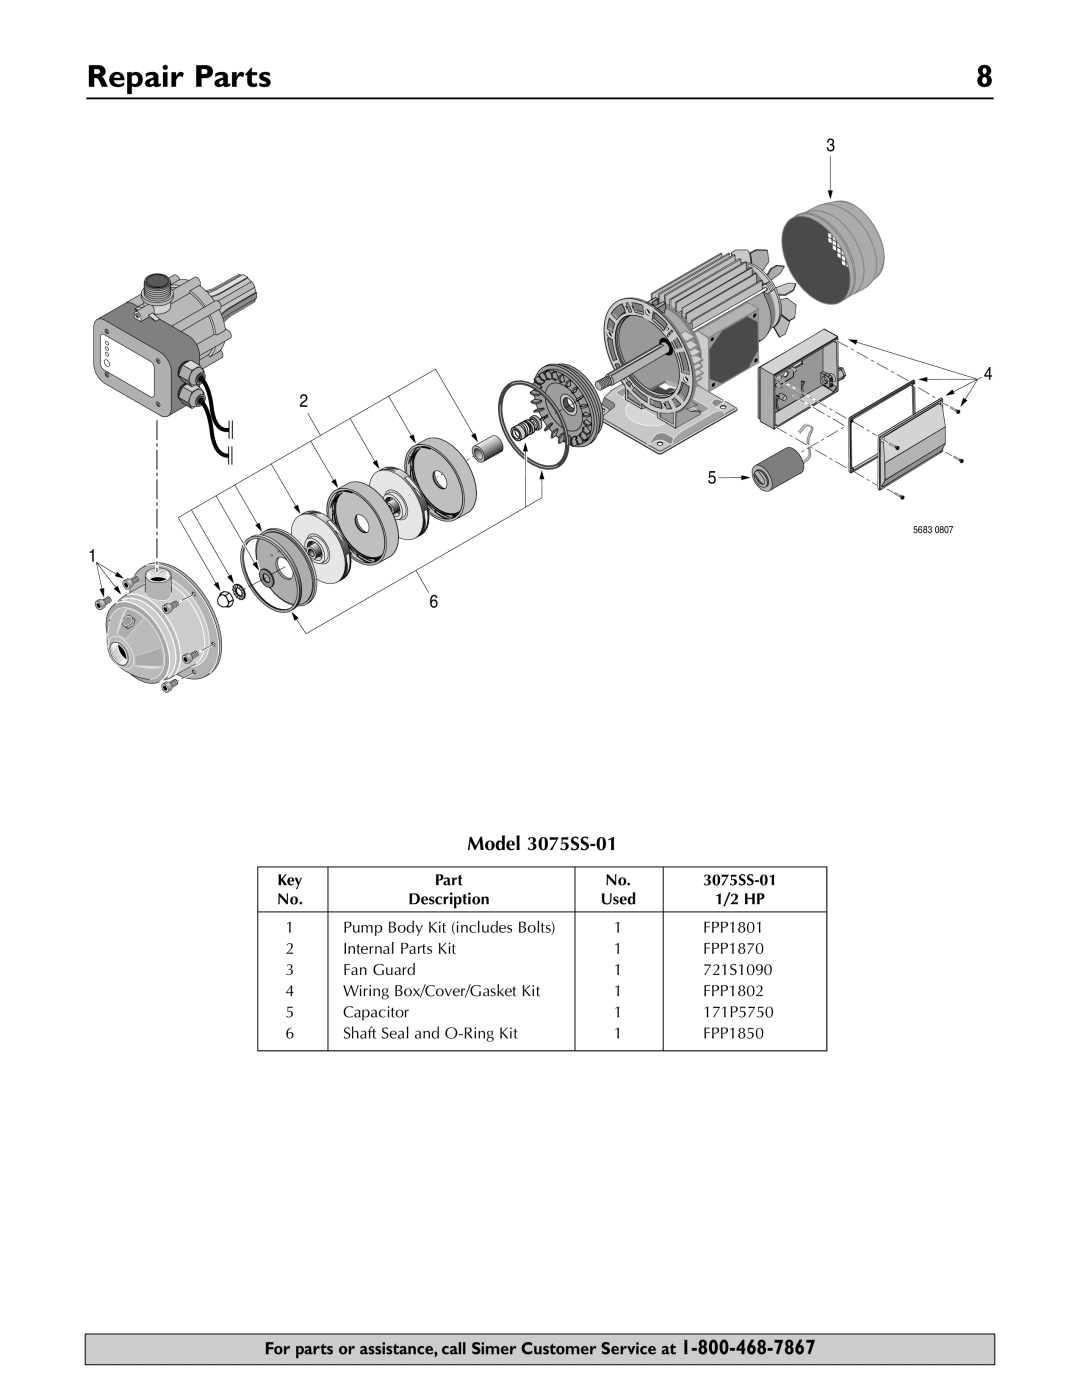 Simer Pumps owner manual Repair Parts, Model 3075SS-01 